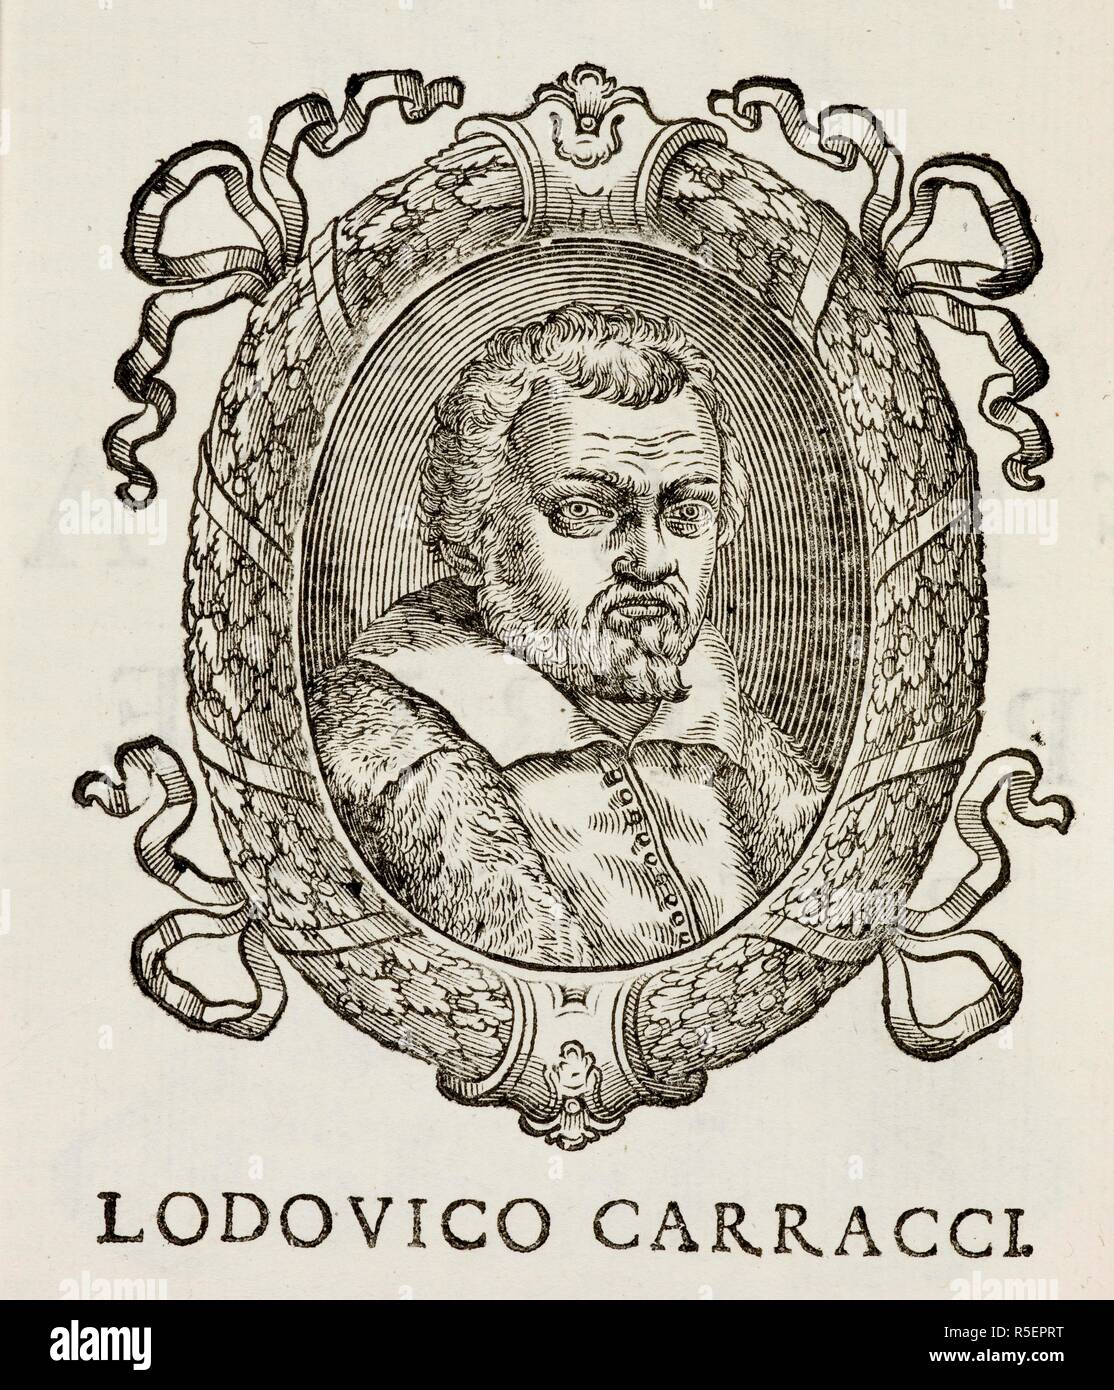 Portrait of Lodovico Carracci (1555-1619). Italian early-Baroque painter, etcher, and printmaker . Felsina Pittrice. Vite de Pittori Bolognesi, etc. Bologna, 1678. Source: 680.e.13, page 354. Stock Photo